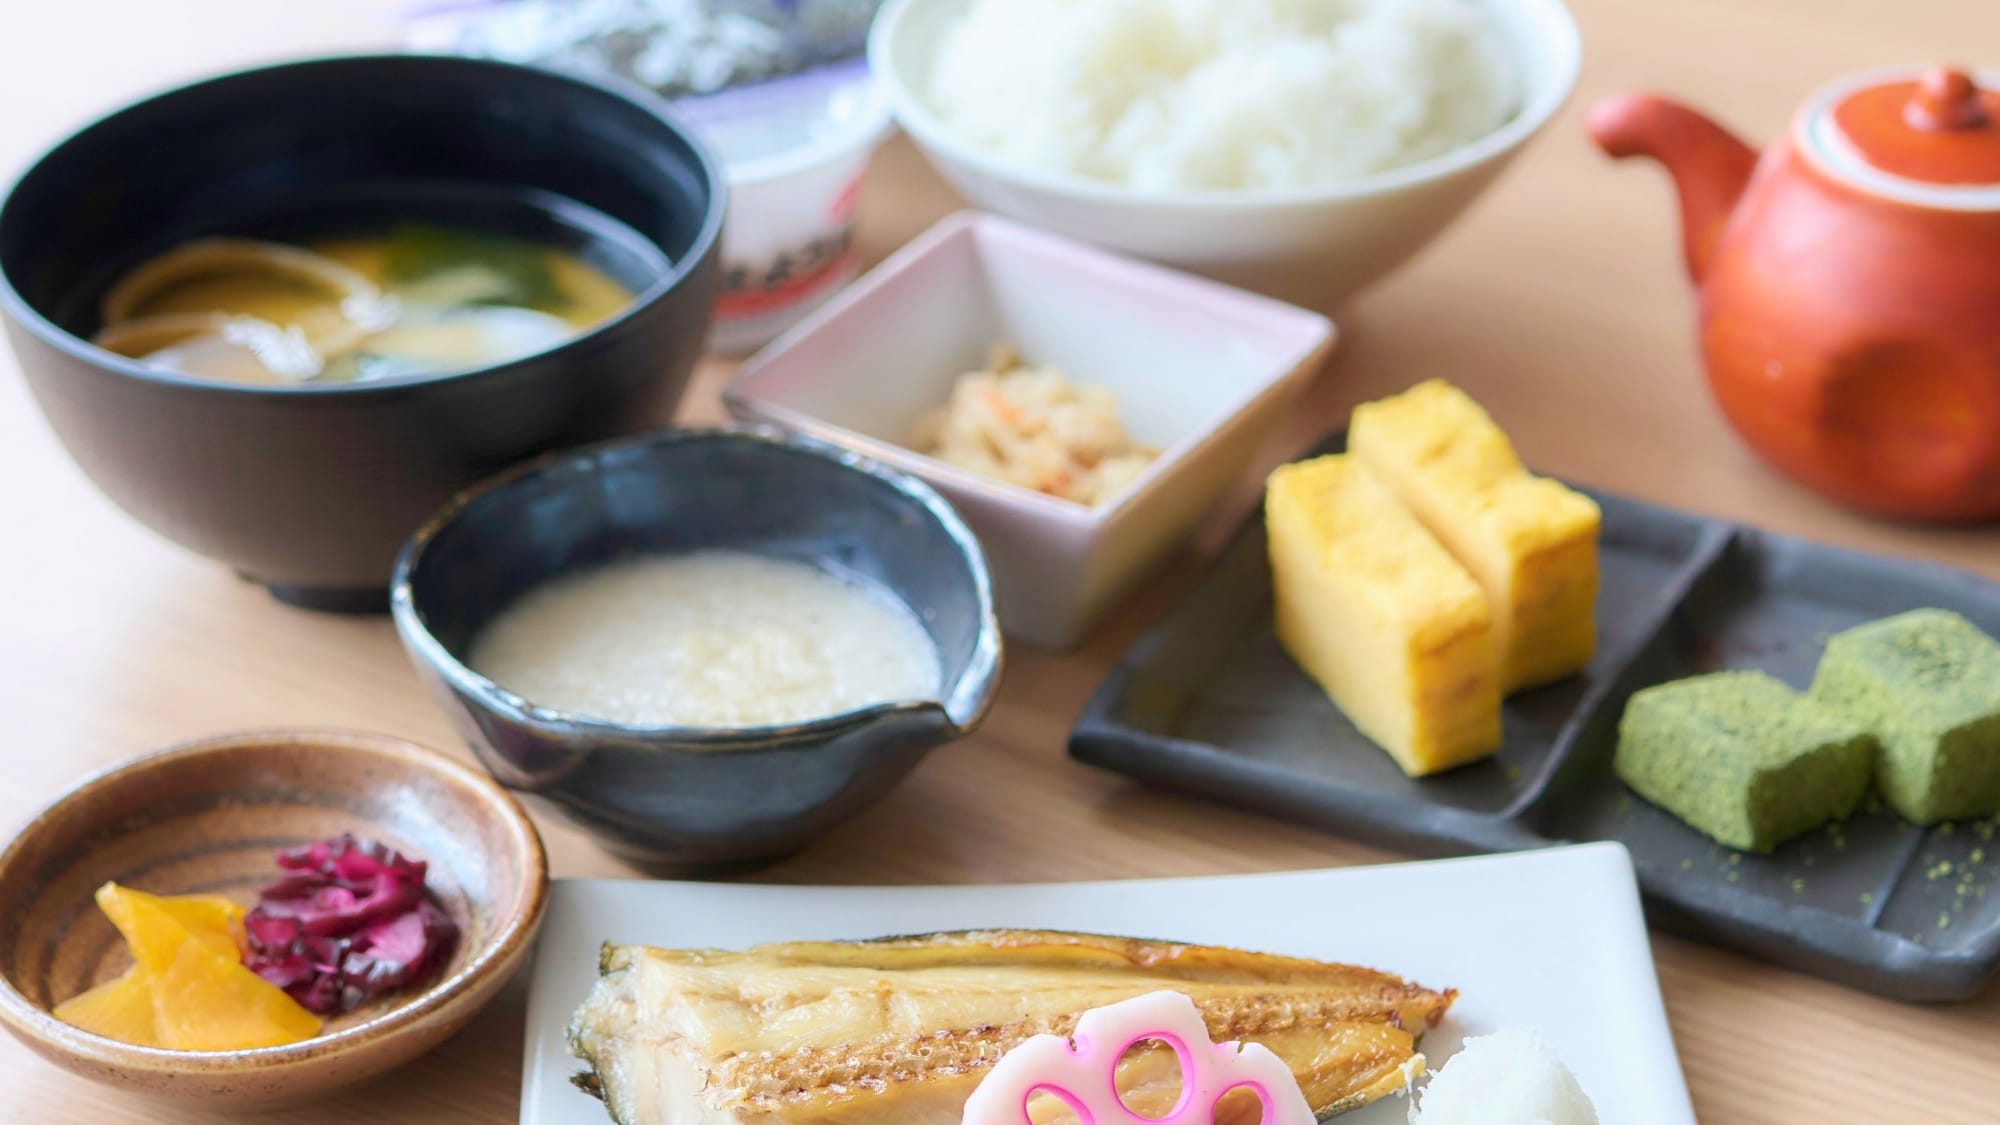 อาหารเช้าแบบญี่ปุ่น: ข้าวที่ปรุงทุกเช้าได้รับการจัดอันดับว่า ``อร่อยมาก!'' จากลูกค้าประจำของเรา *ภาพถ่ายทั้งหมดใช้เพื่อเป็นตัวอย่างเท่านั้น